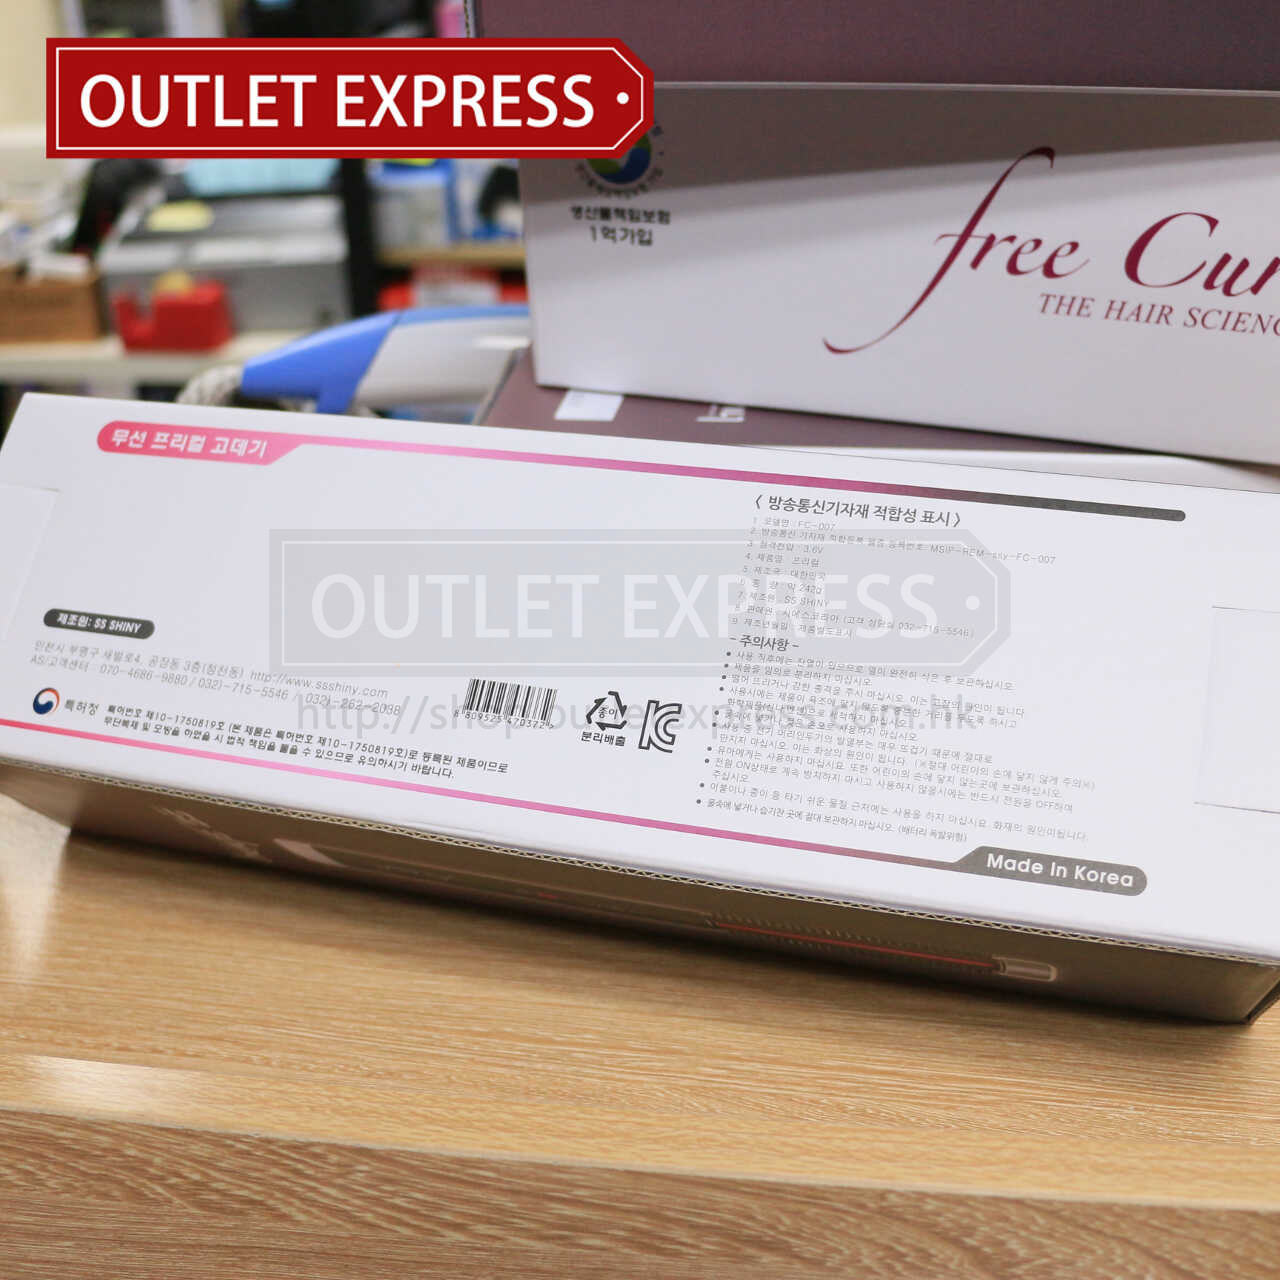 韓國SS Shiny Free curl USB充電無線捲髮器 包裝盒- Outlet Express HK生活百貨城實拍相片